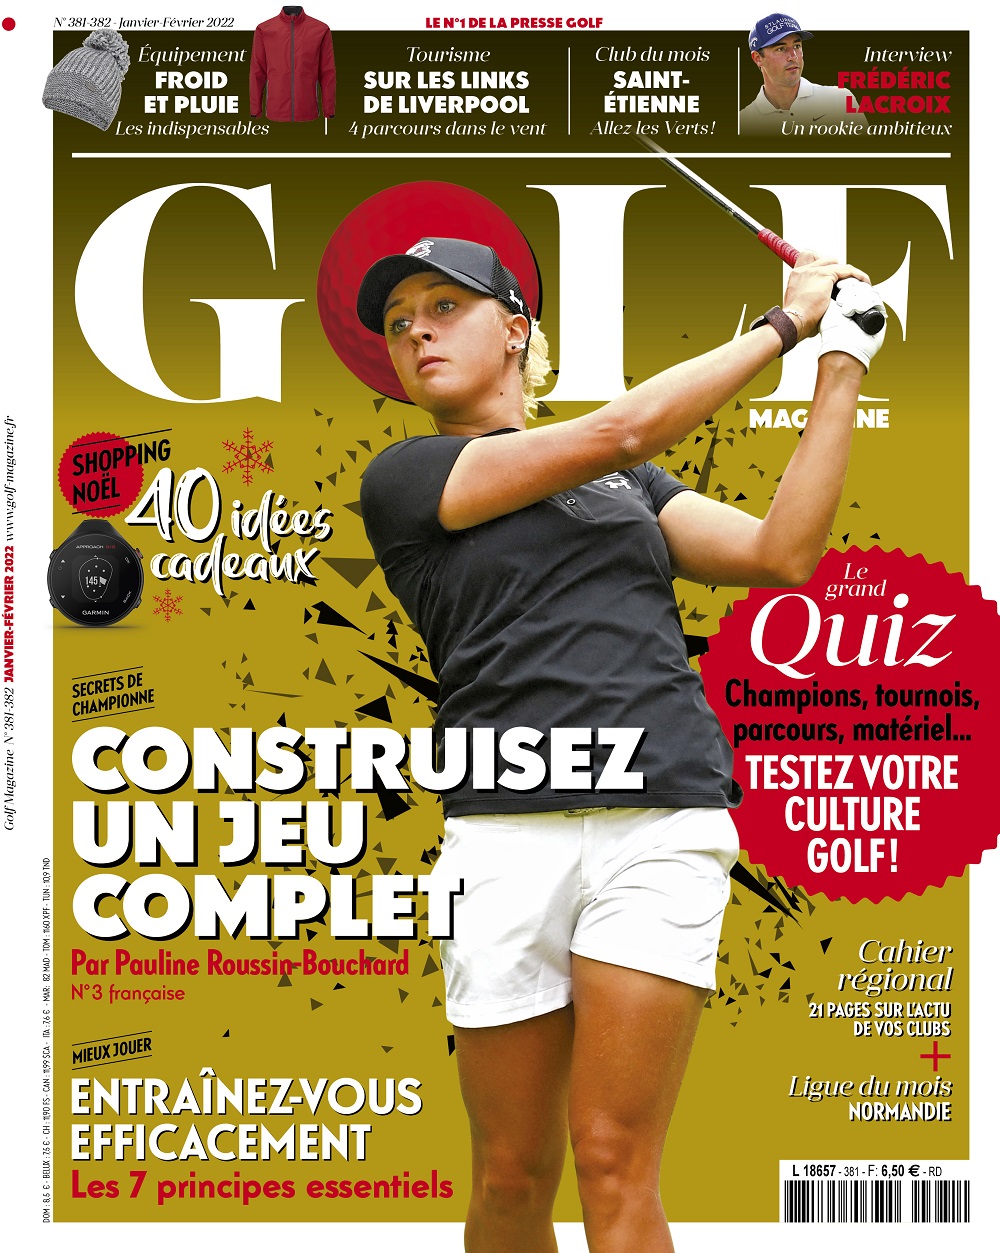 Le Golf Magazine n°381-382 est en kiosque !